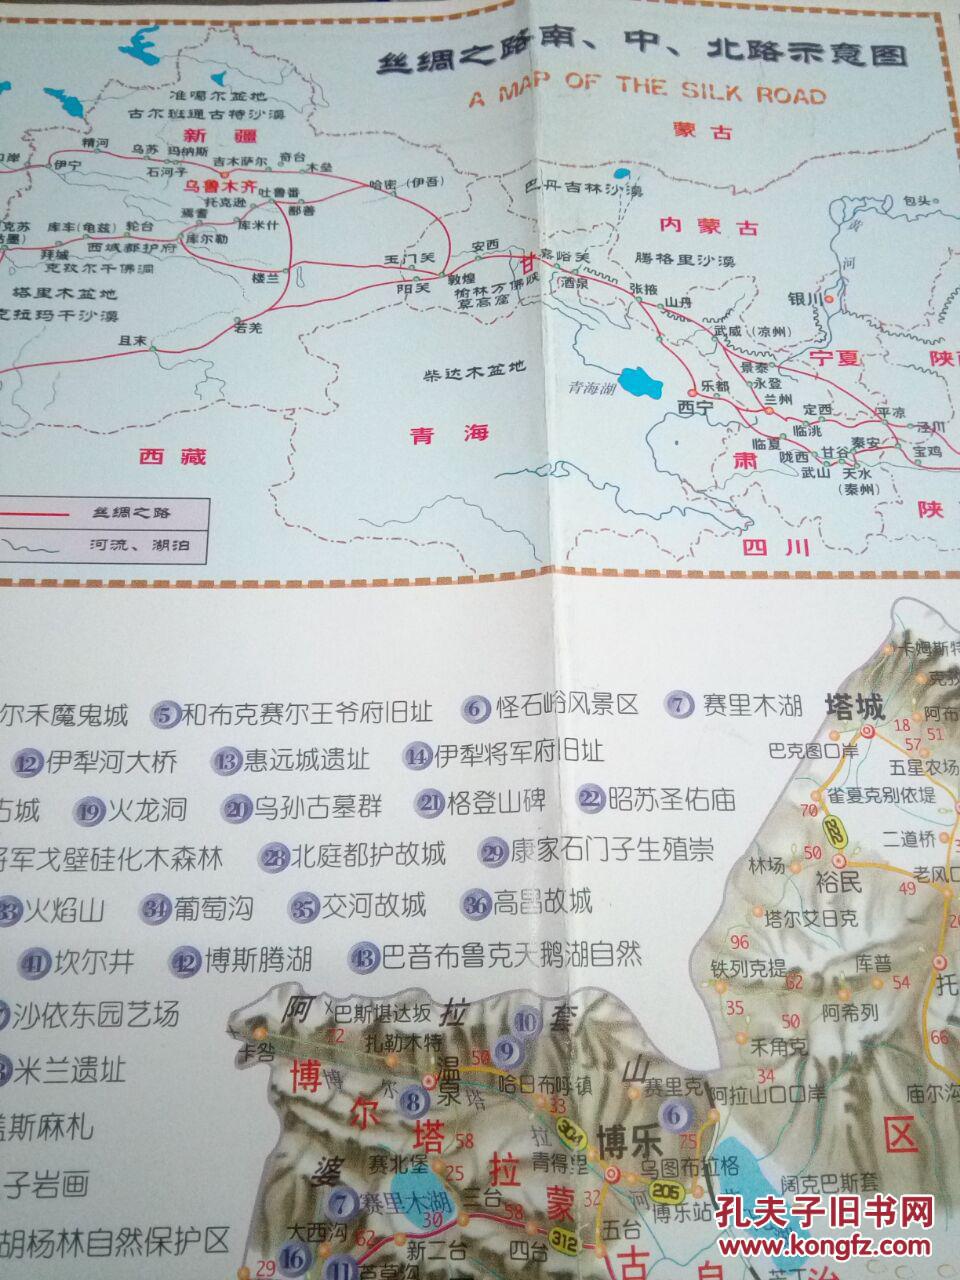 名吃名店一条街特色店分布图 新疆旅游交通地图 丝绸之路南,中,北路示图片